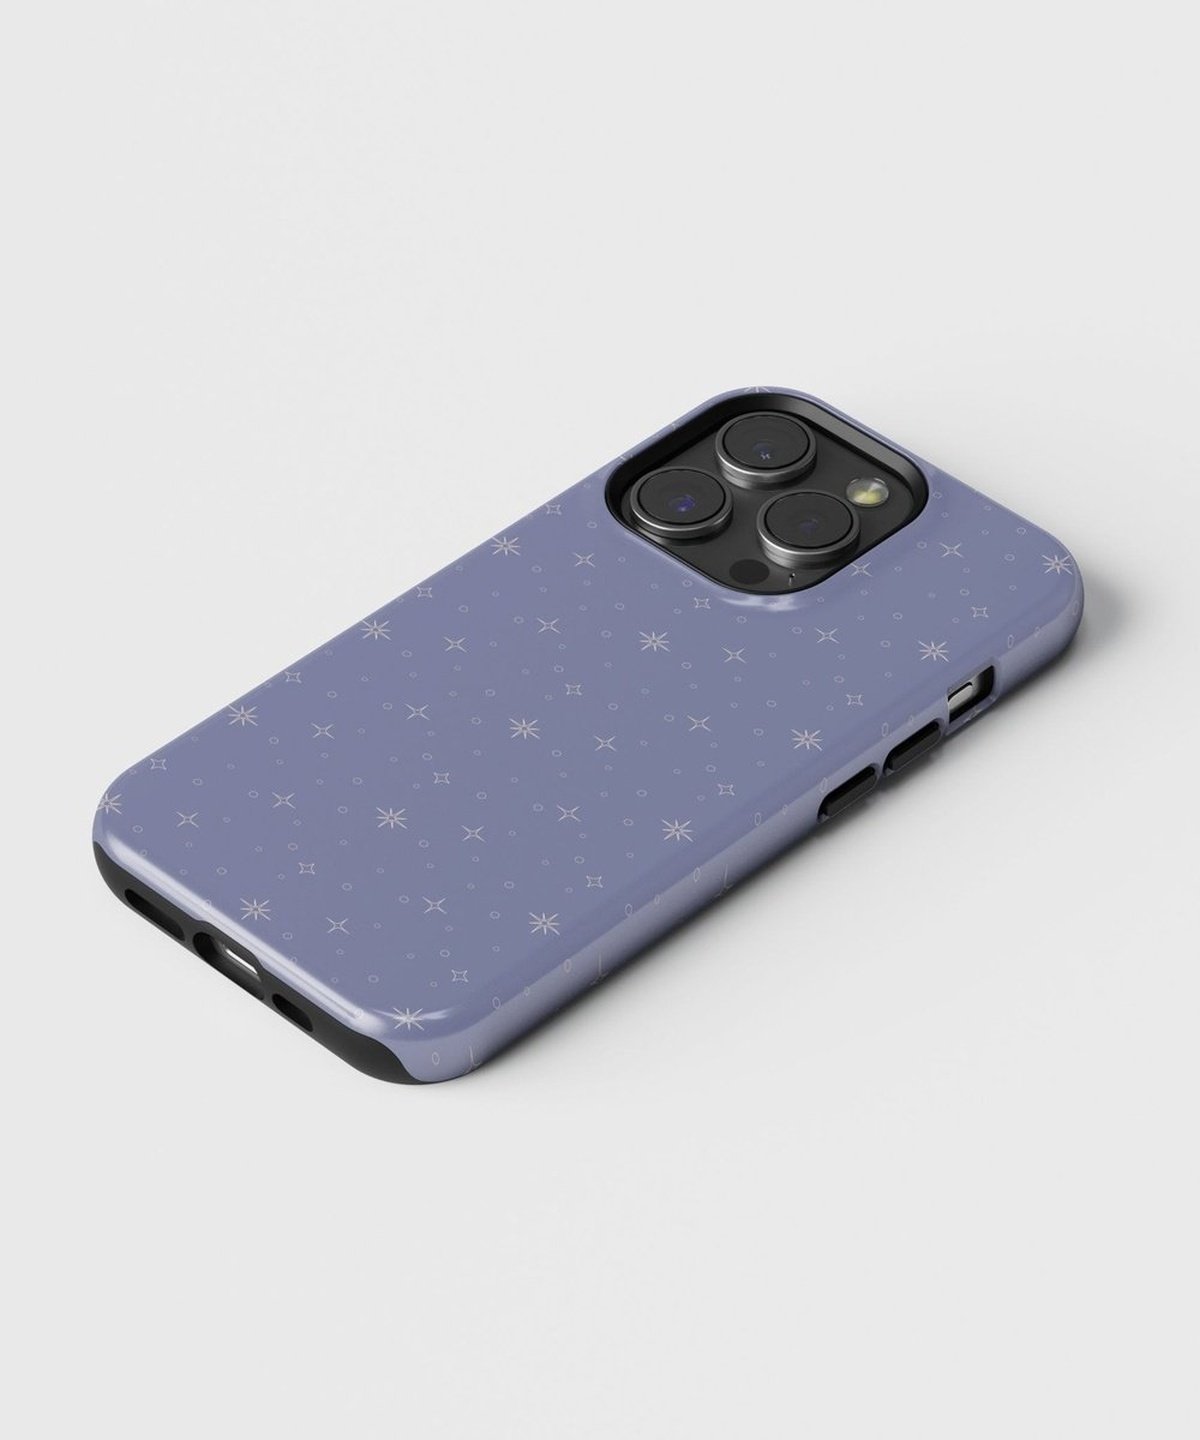 Celestial Moon's Embrace - iPhone Tough case